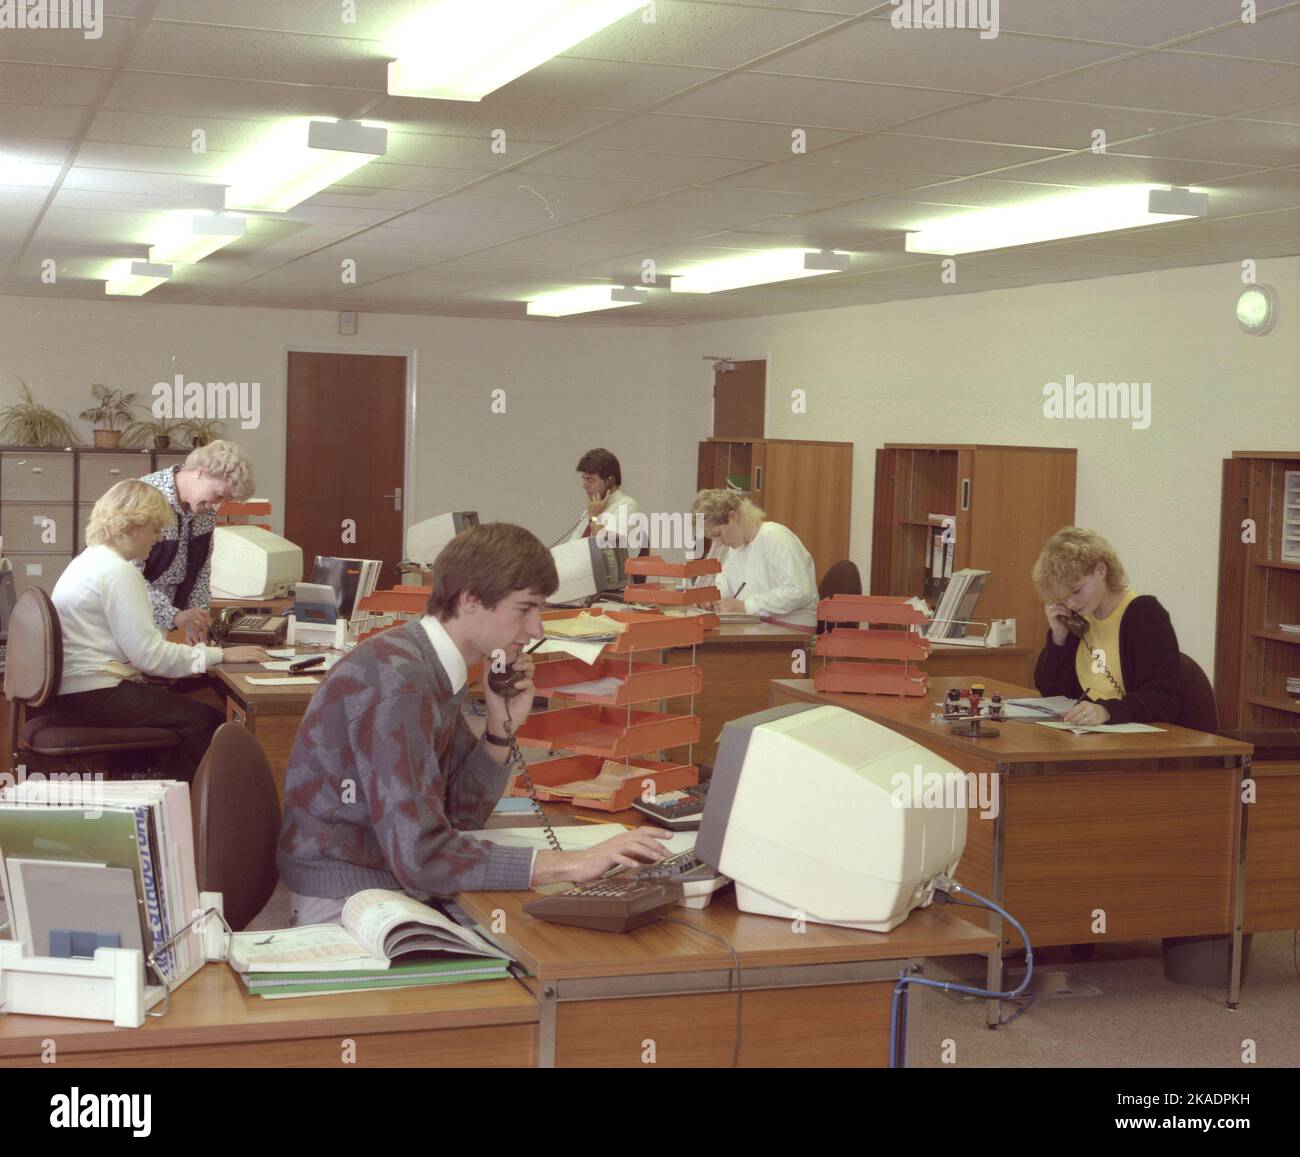 Circa 1989, storico, open-plan Office, dipendenti maschi e femmine che lavorano alle scrivanie, alcuni al telefono e utilizzando computer terminali dell'epoca, Inghilterra, Regno Unito. Foto Stock